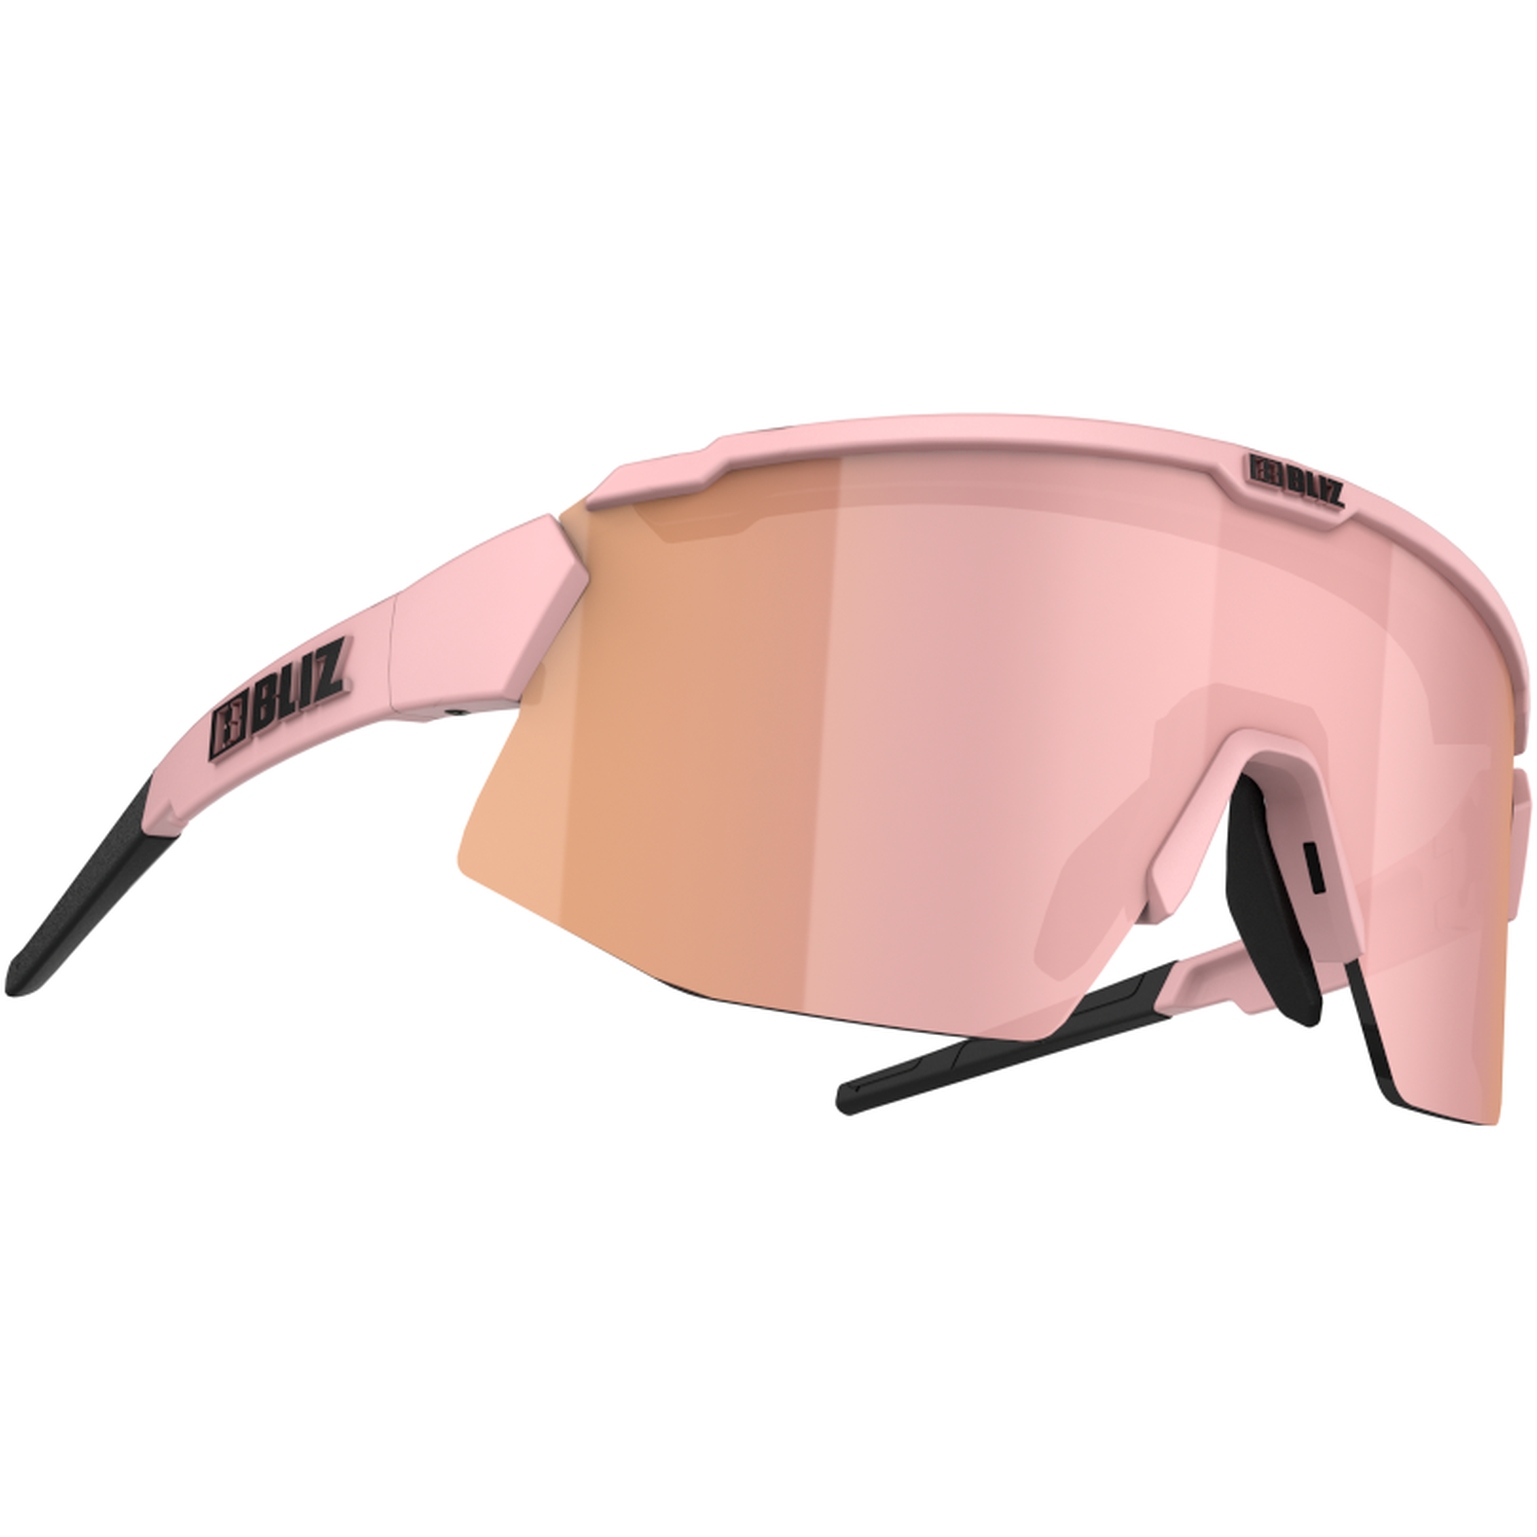 Produktbild von Bliz Breeze Small Brille - Matt Pink / Brown with Rose Multi + Pink